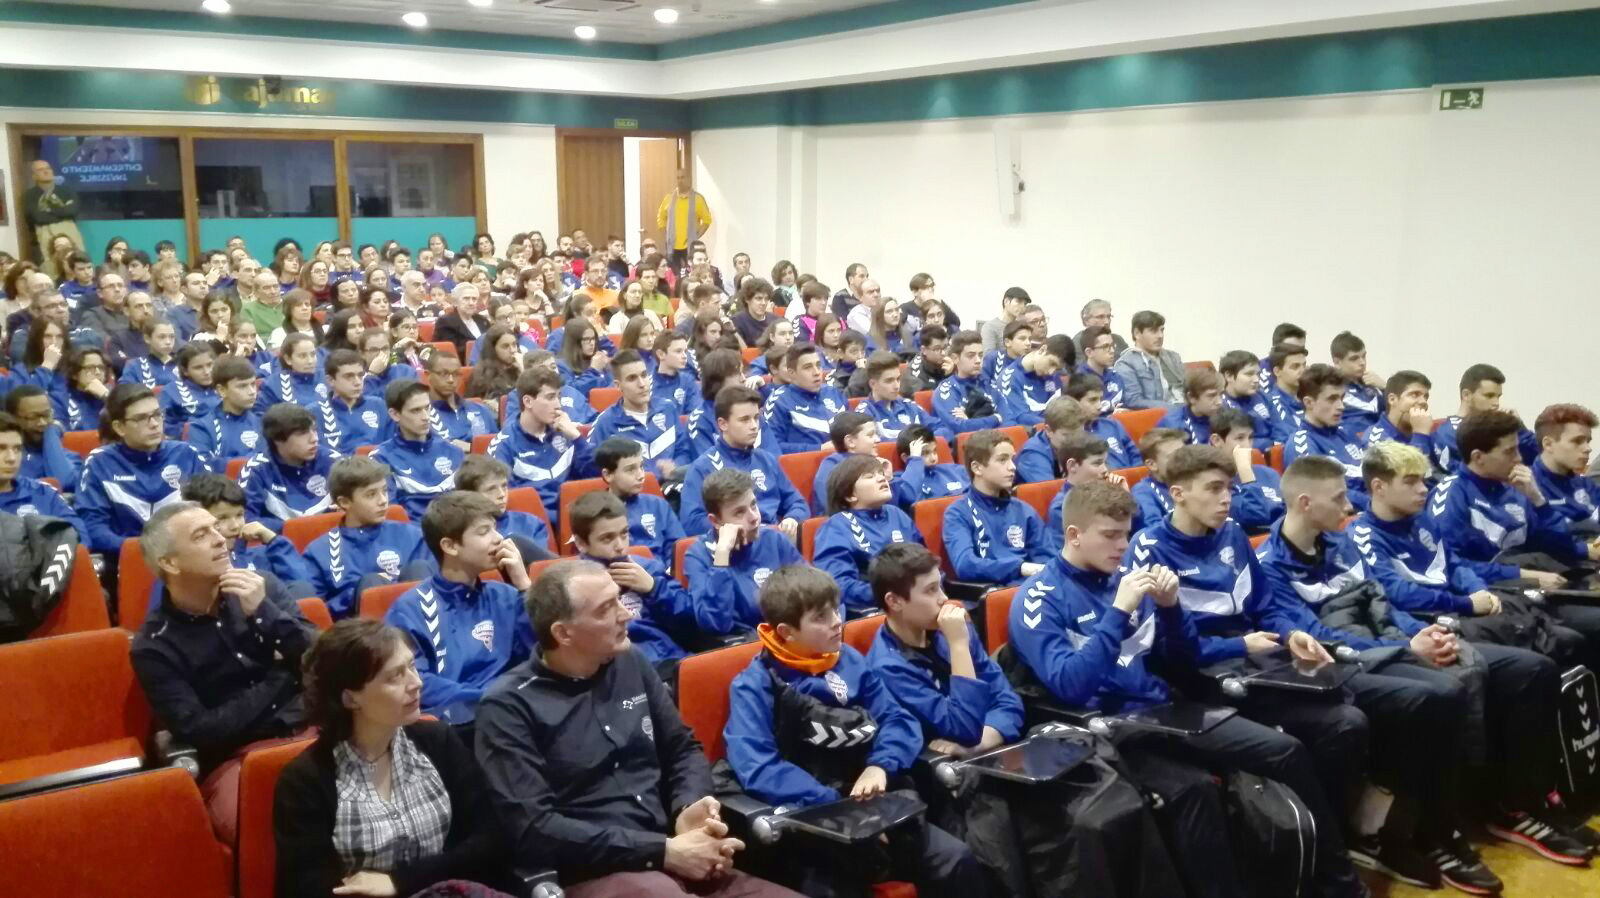 Más de 200 personas en la charla ‘Entrenamiento invisible. Nutrición y hábitos saludables’ impartida por el Recoletas Atlético Valladolid